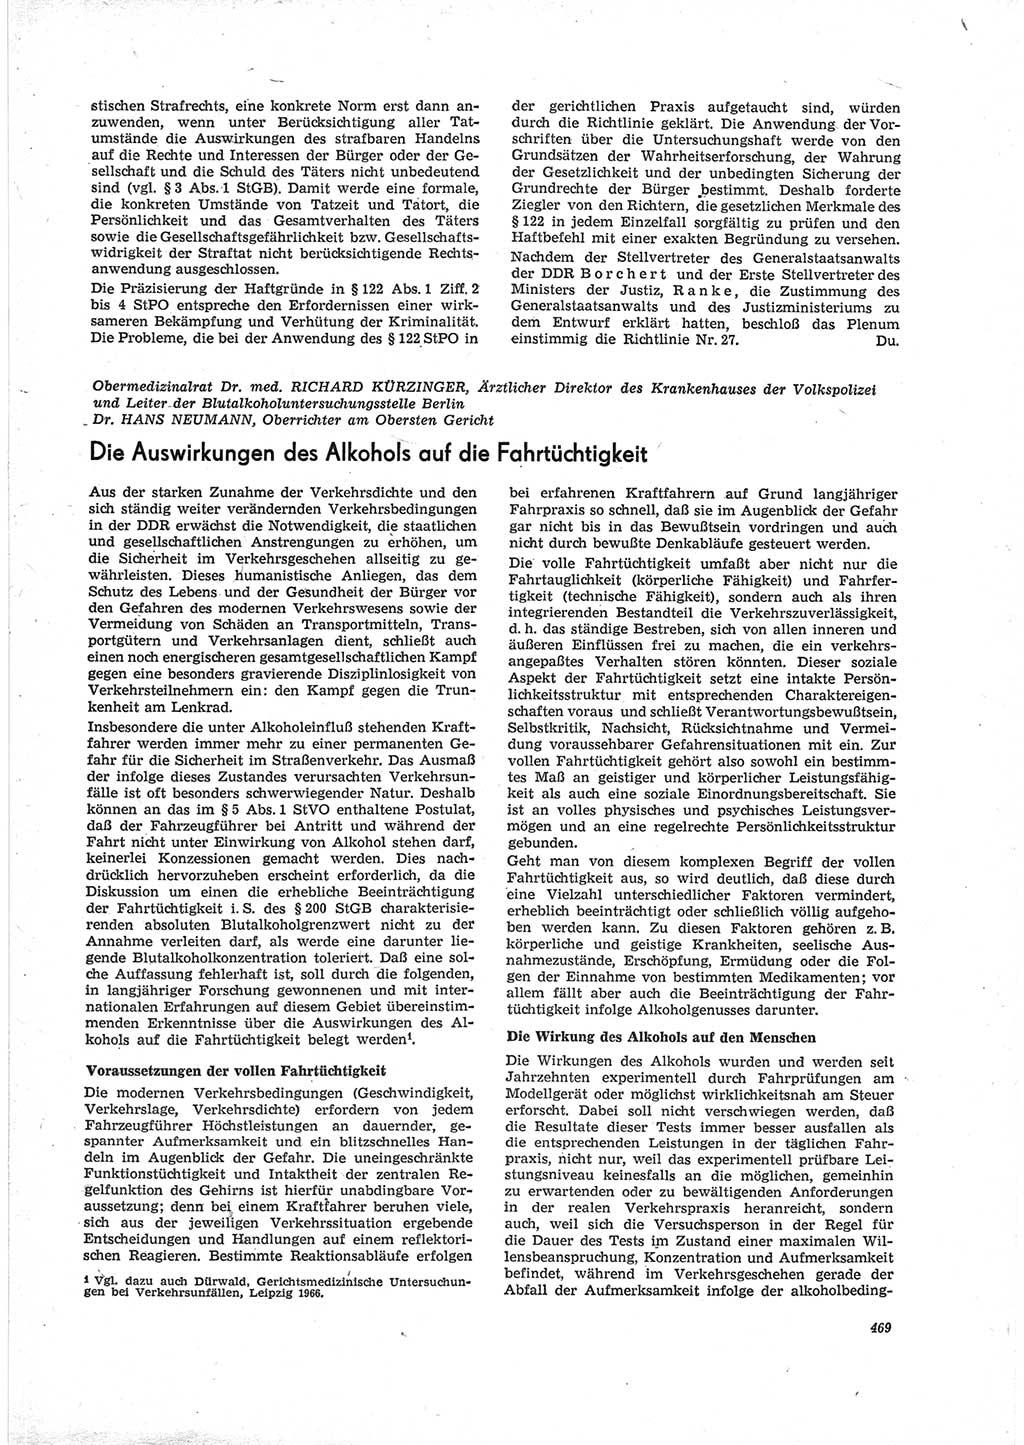 Neue Justiz (NJ), Zeitschrift für Recht und Rechtswissenschaft [Deutsche Demokratische Republik (DDR)], 23. Jahrgang 1969, Seite 469 (NJ DDR 1969, S. 469)